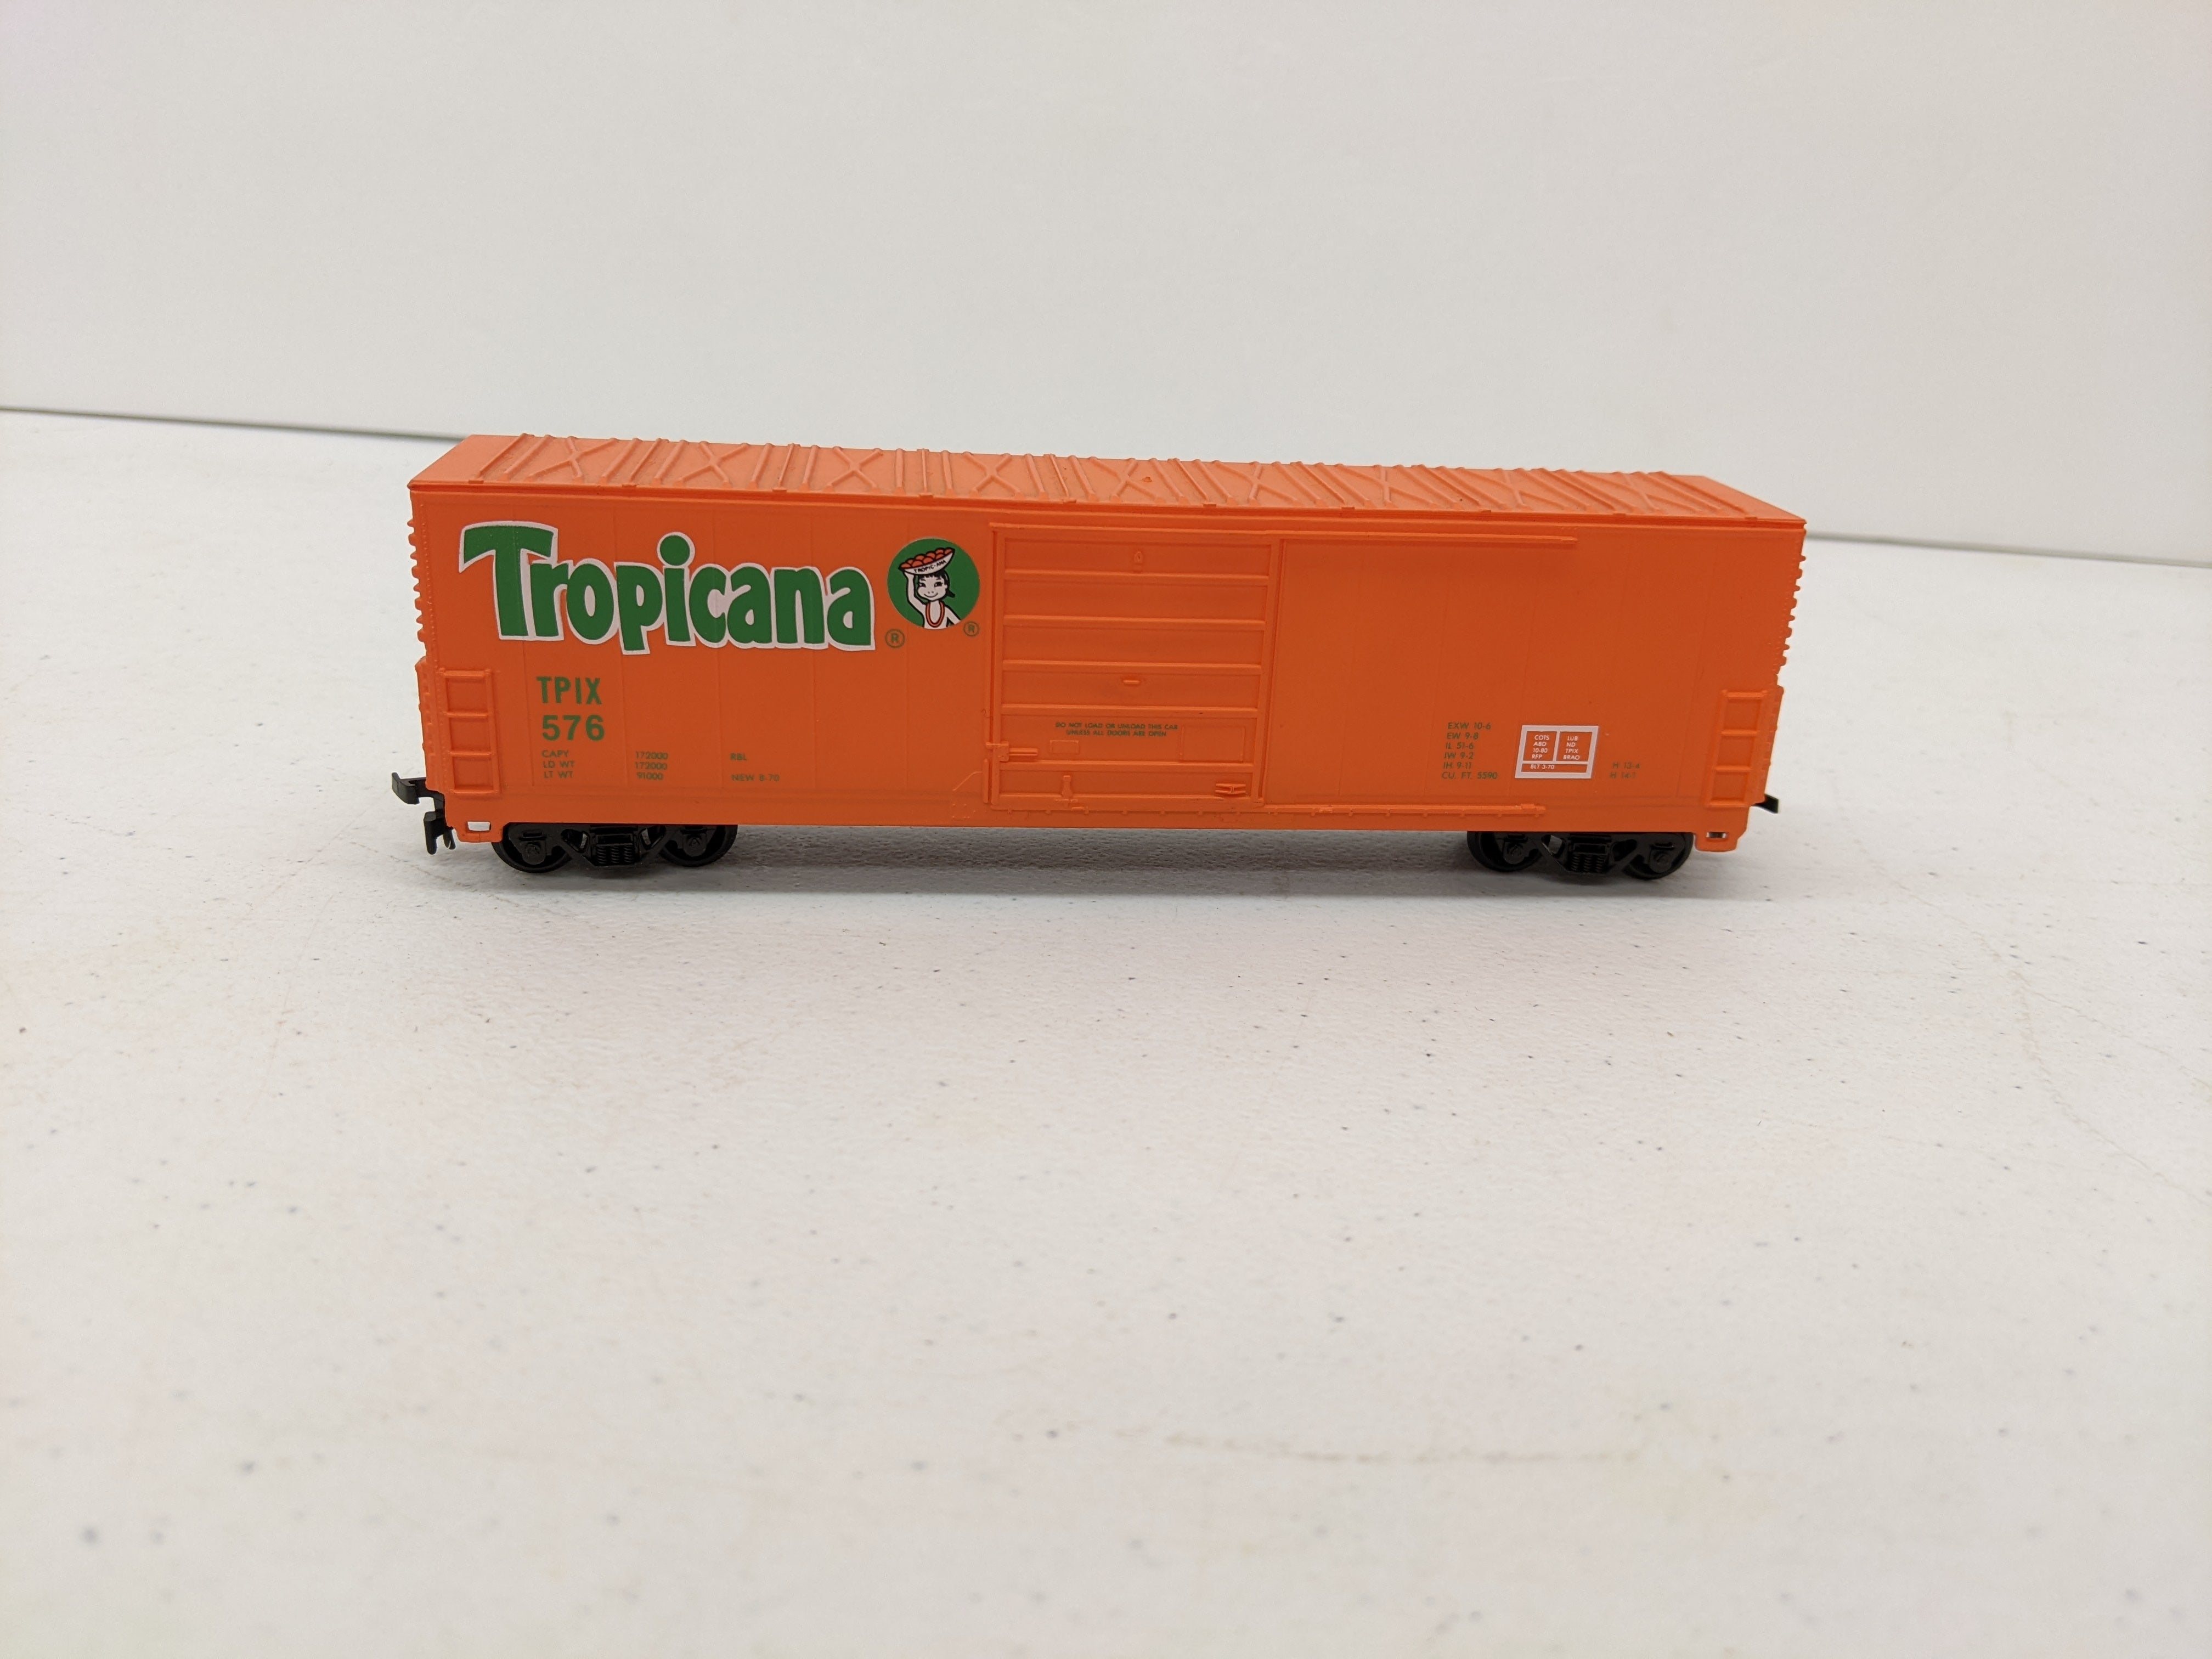 USED Life-Like HO Scale, 50' Steel Box Car, Tropicana TPIX #576